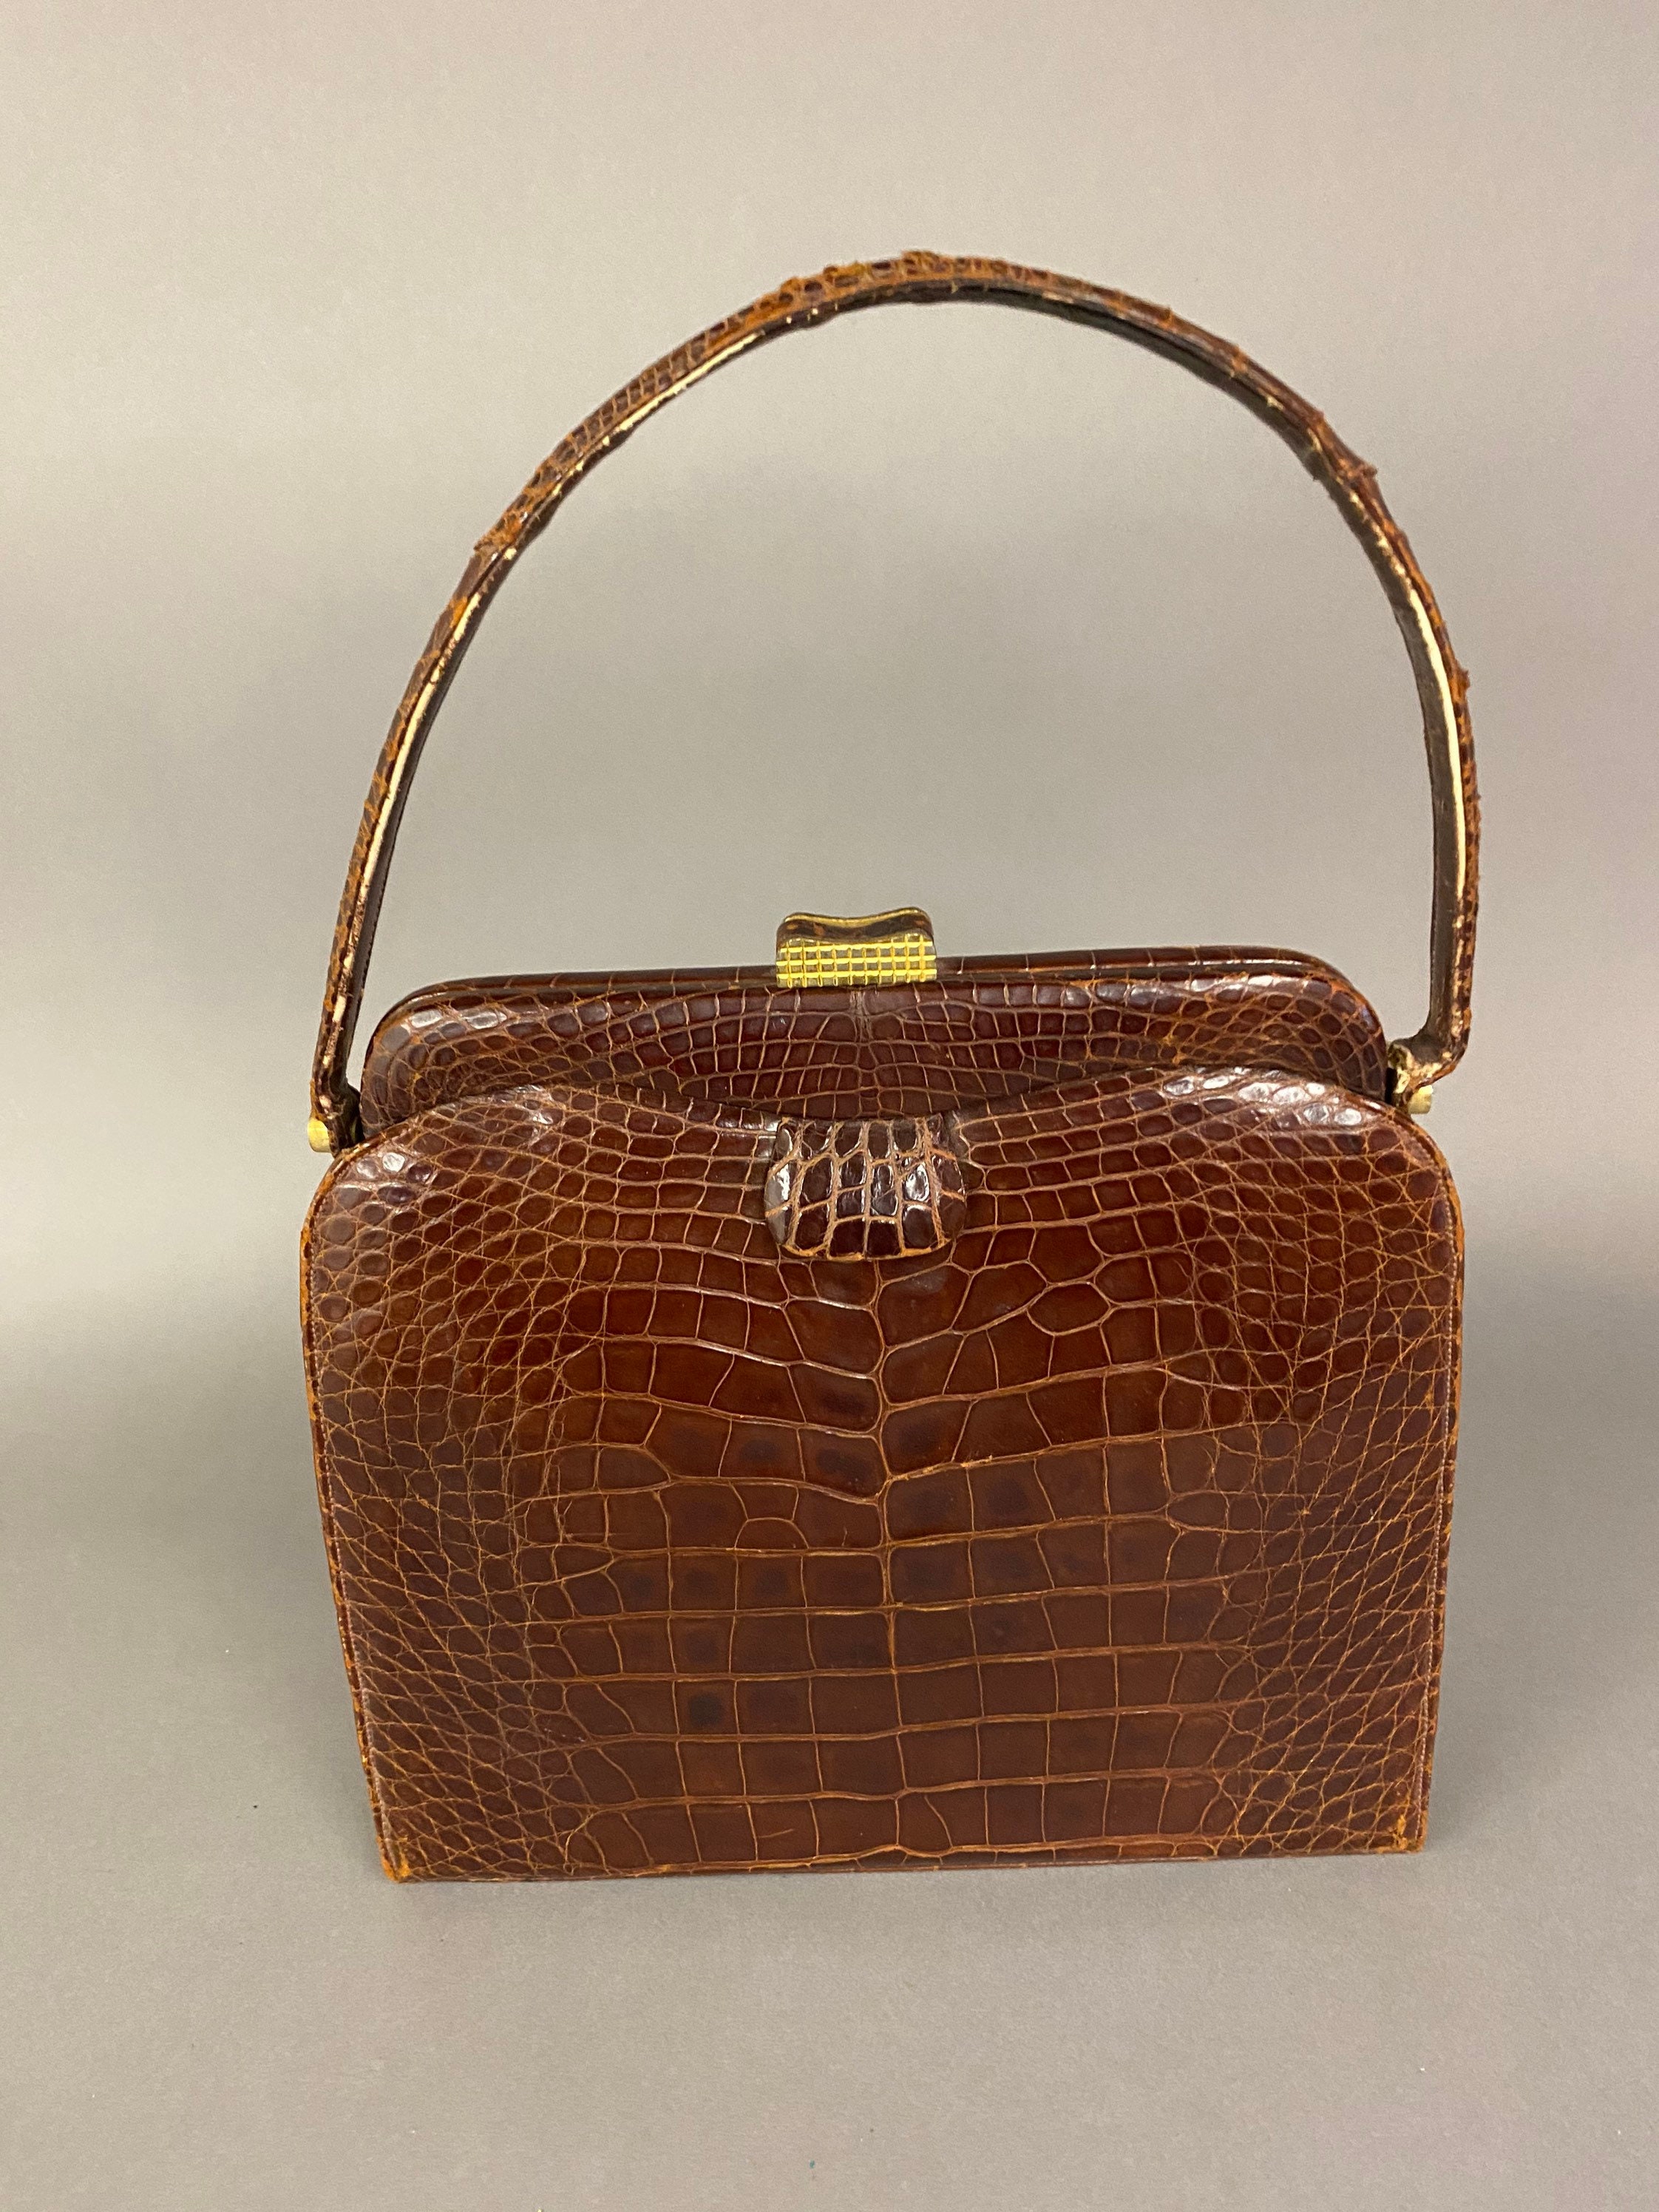 1950s Fernande Desgranges Black Leather and Gold Metal Handbag